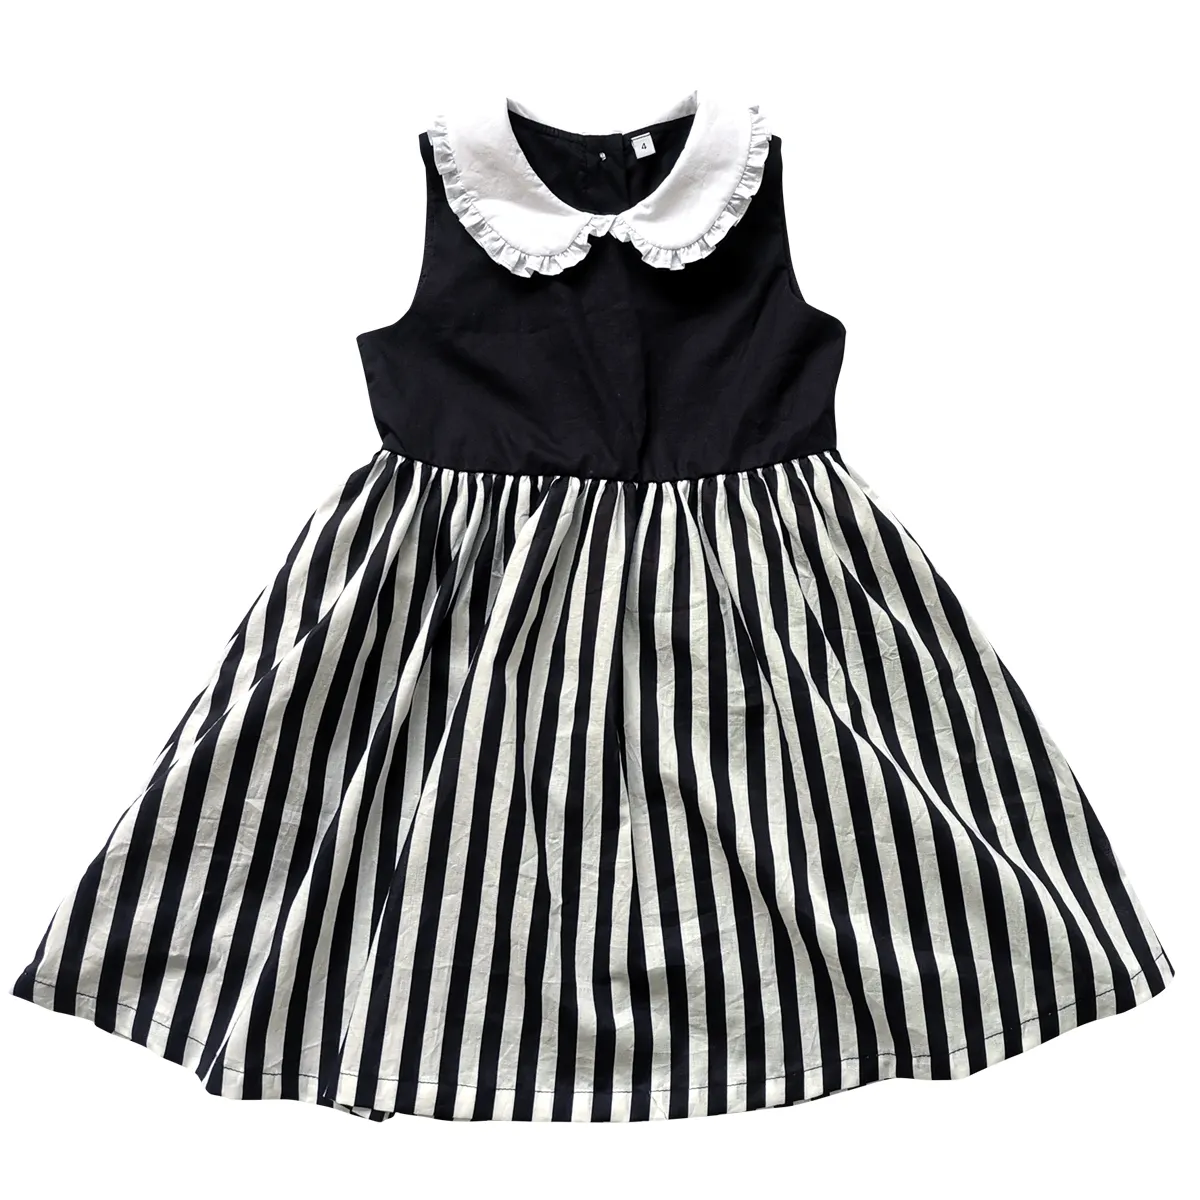 Tessuto personalizzato all'ingrosso vestito da neonata primavera autunno moda nero strisce bianche vestito bambini ragazze nuovo stile Boutique Dress